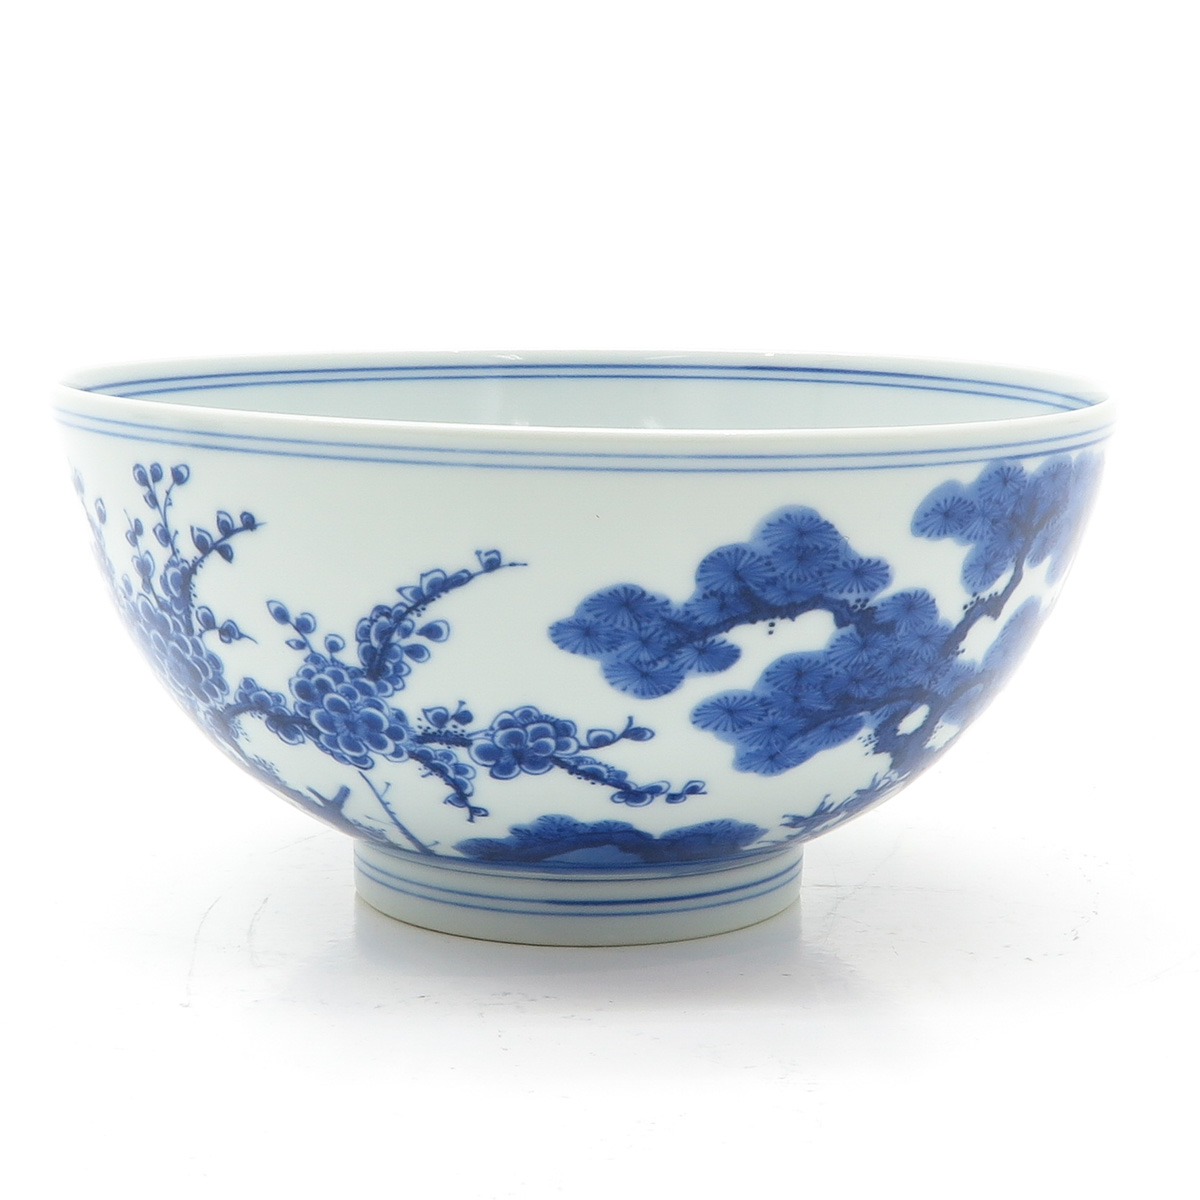 China Porcelain Bowl - Image 4 of 6